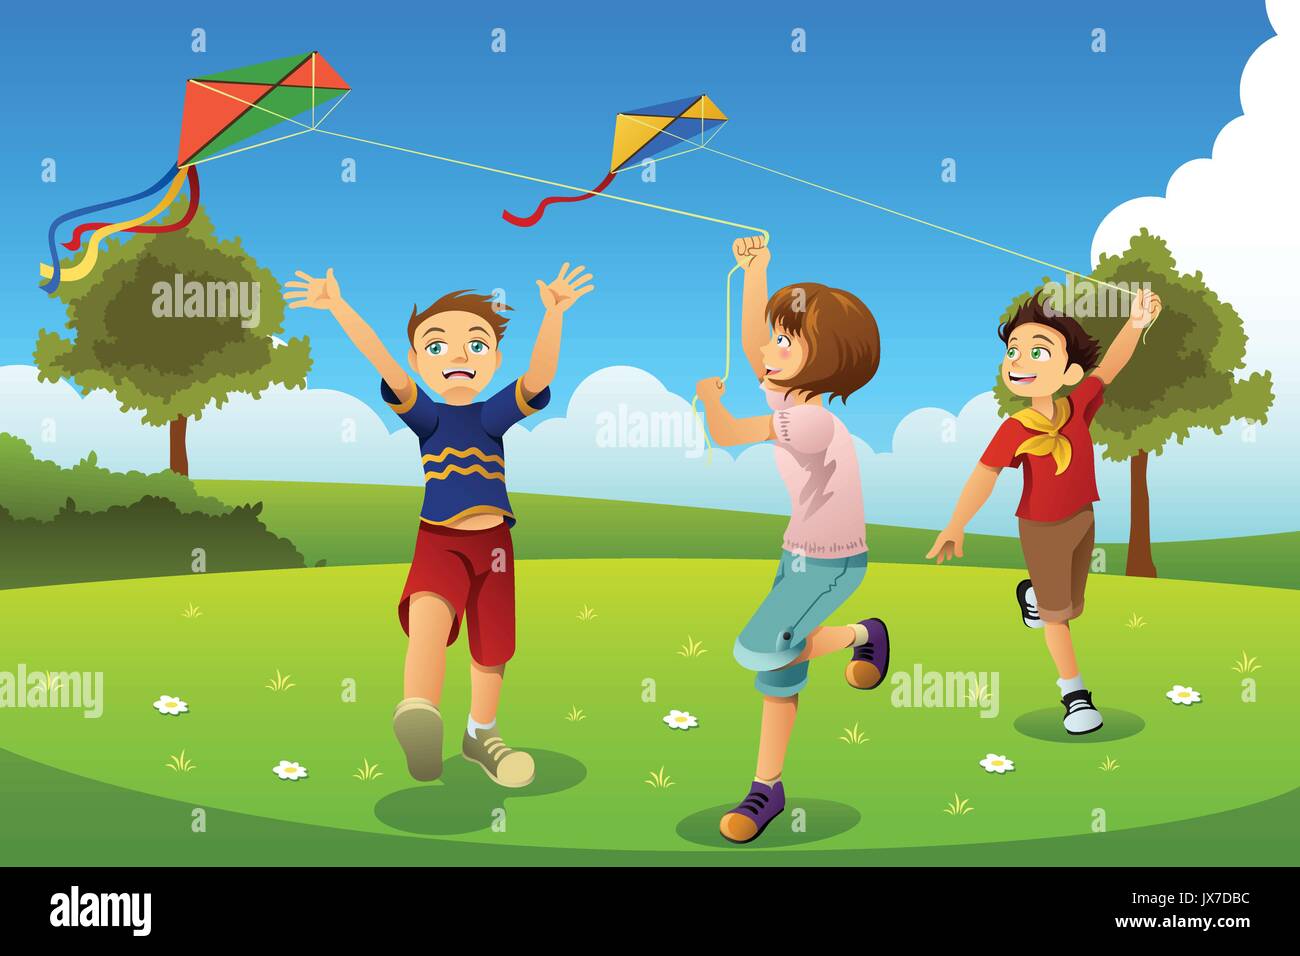 Ein Vektor Abbildung: Kinder fliegen Drachen in einem Park Stock Vektor